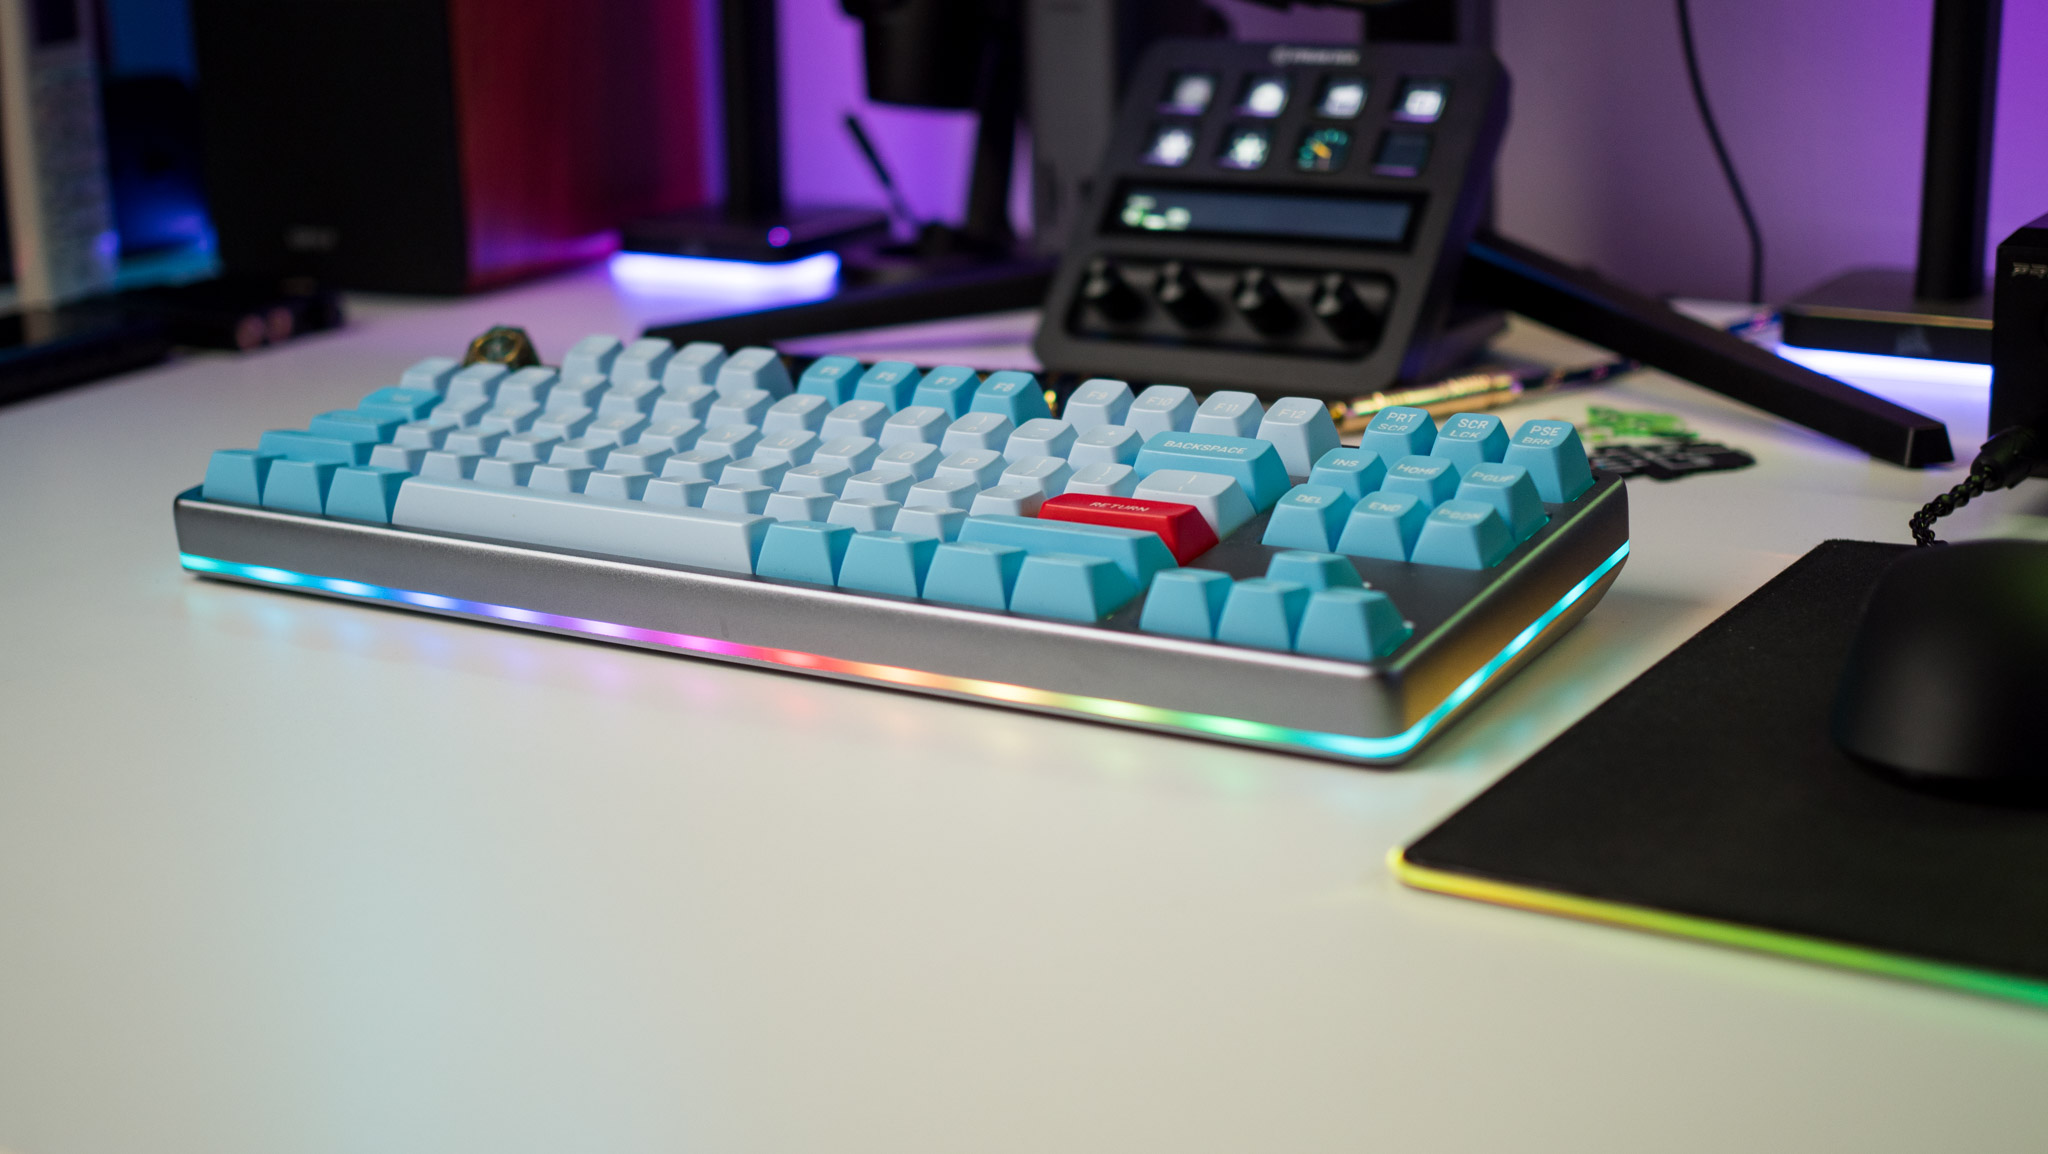 Vista lateral da iluminação RGB no Drop Americana Keyboard